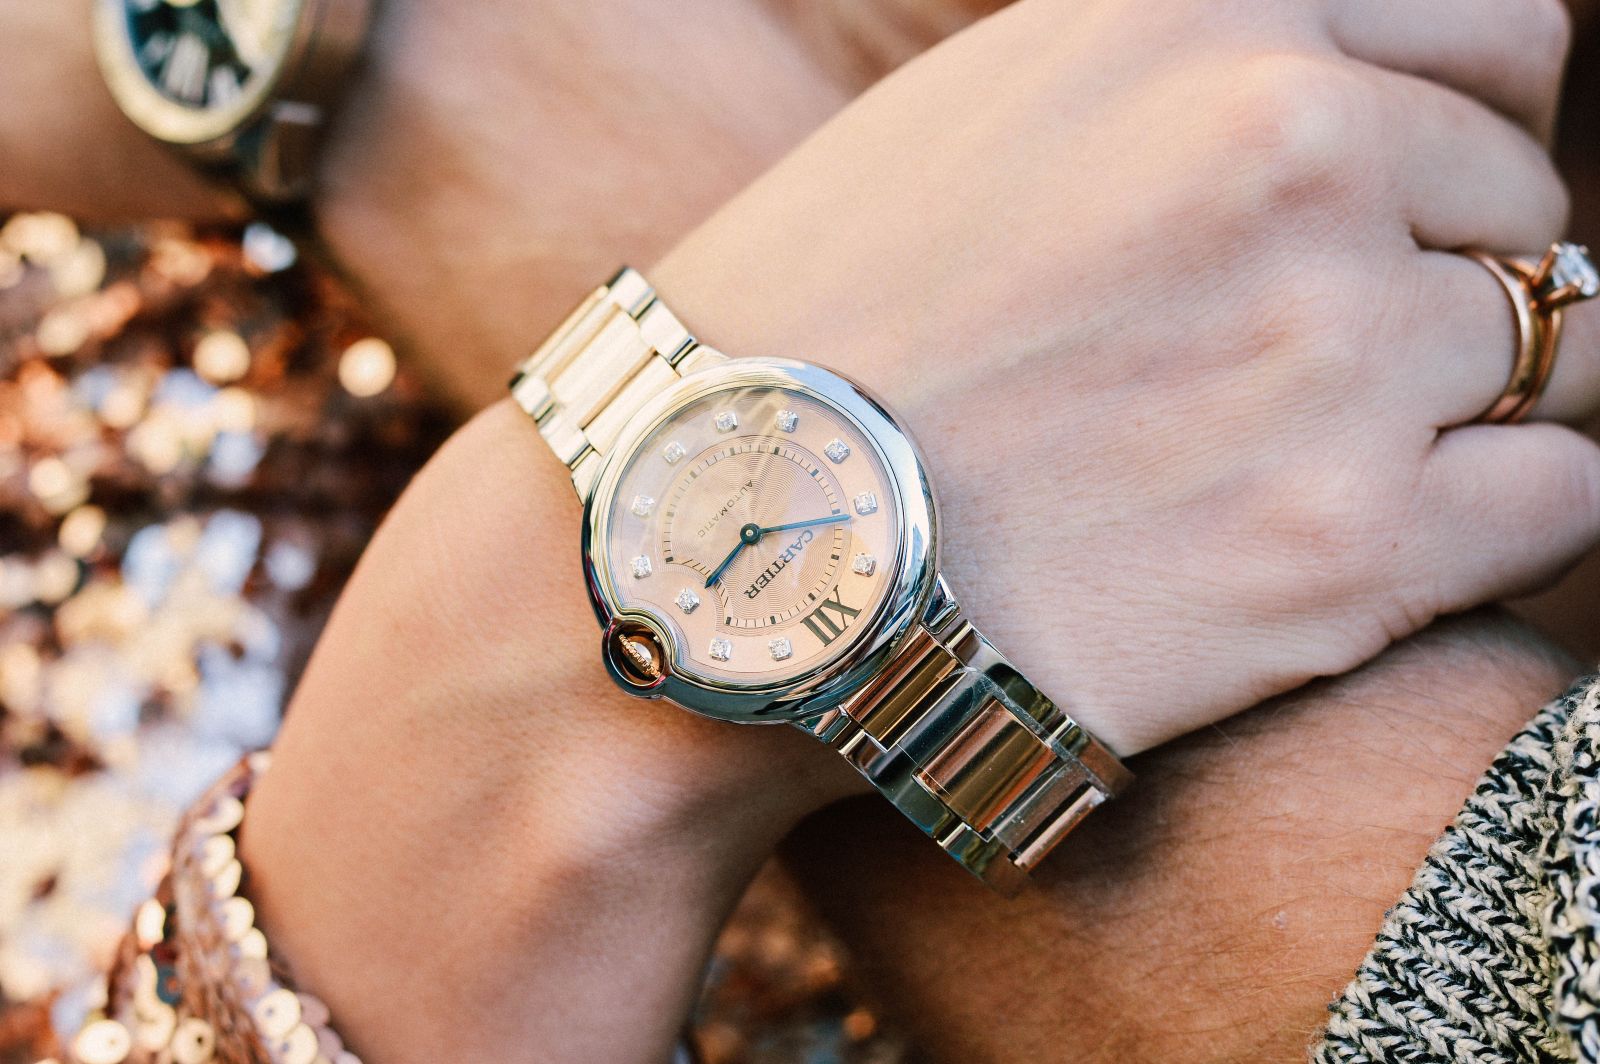 Какие есть часы на руку. Стильные наручные часы. Наручные часы на руке. Часы на руку женские. Часы мужские и женские.